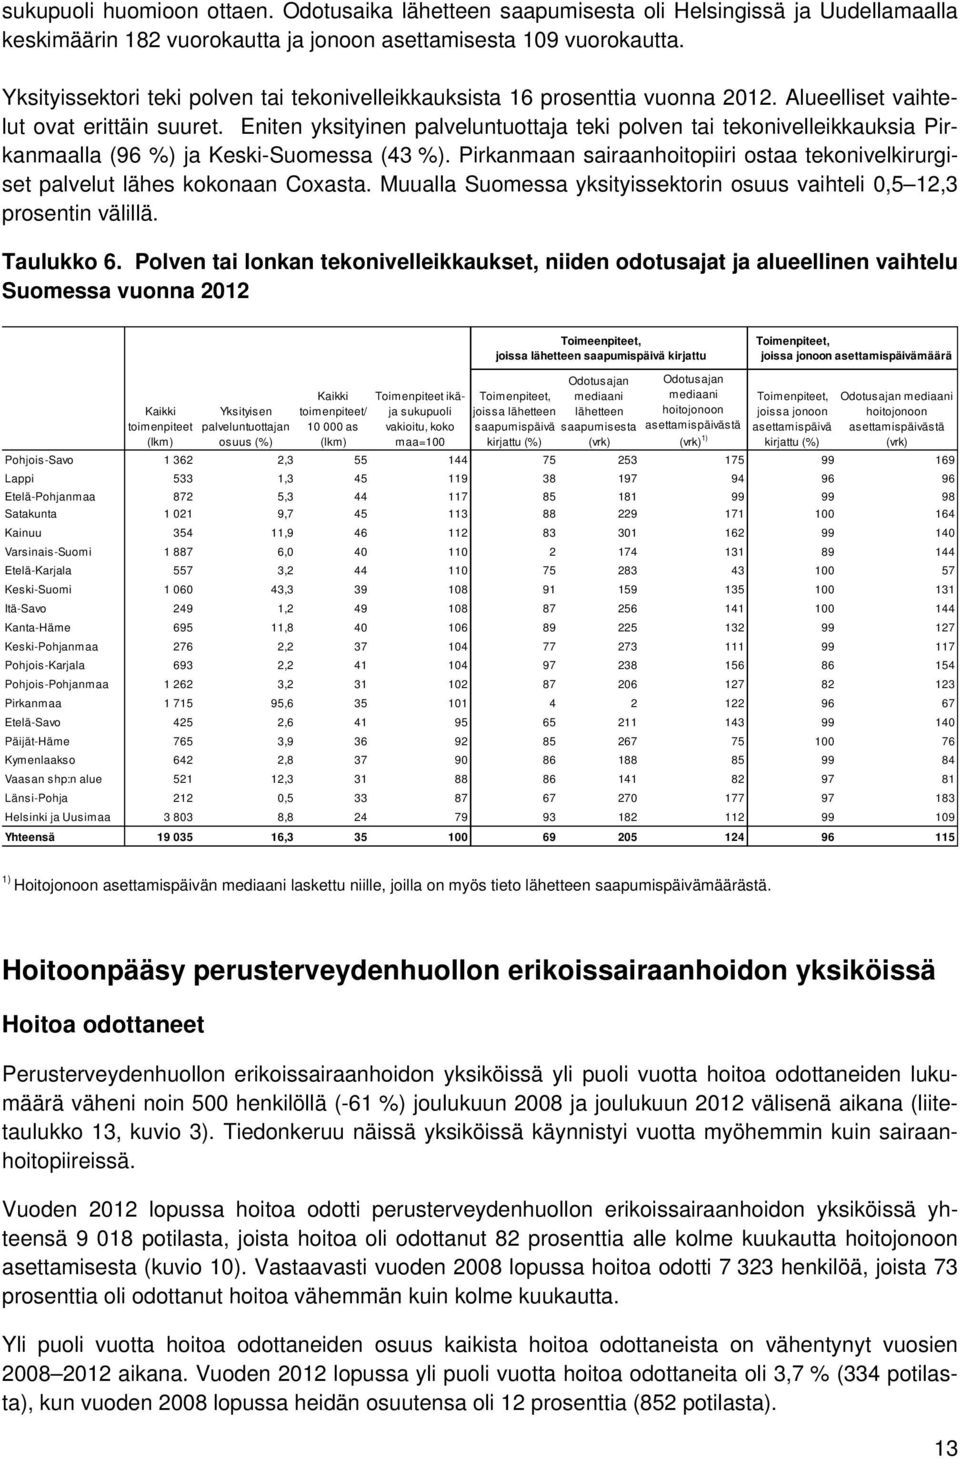 Eniten yksityinen palveluntuottaja teki polven tai tekonivelleikkauksia Pirkanmaalla (96 %) ja Keski-Suomessa (43 %).